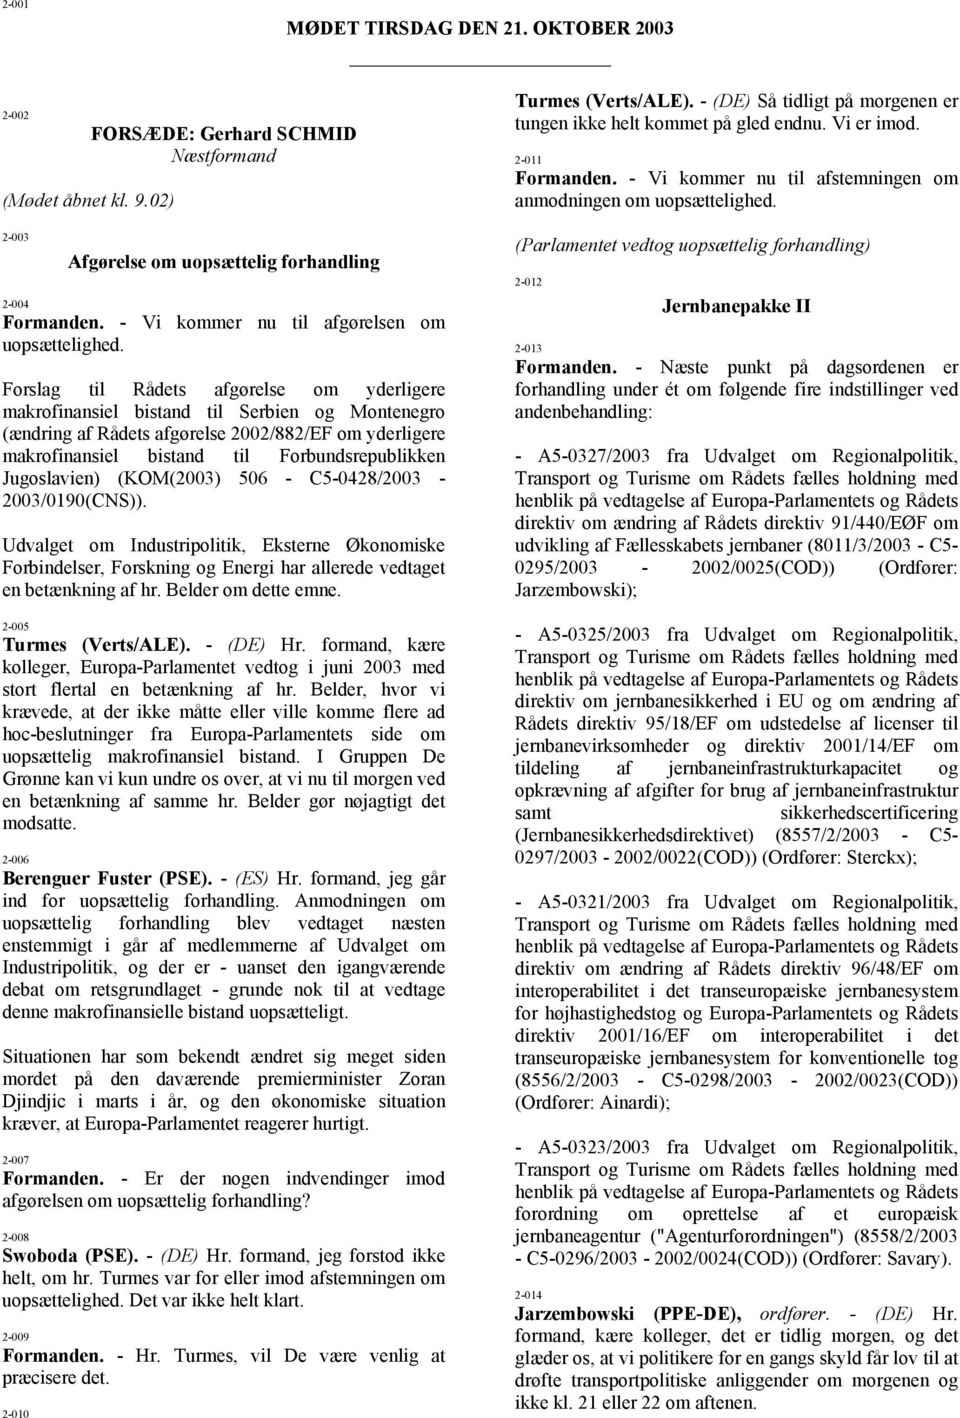 Forslag til Rådets afgørelse om yderligere makrofinansiel bistand til Serbien og Montenegro (ændring af Rådets afgørelse 2002/882/EF om yderligere makrofinansiel bistand til Forbundsrepublikken